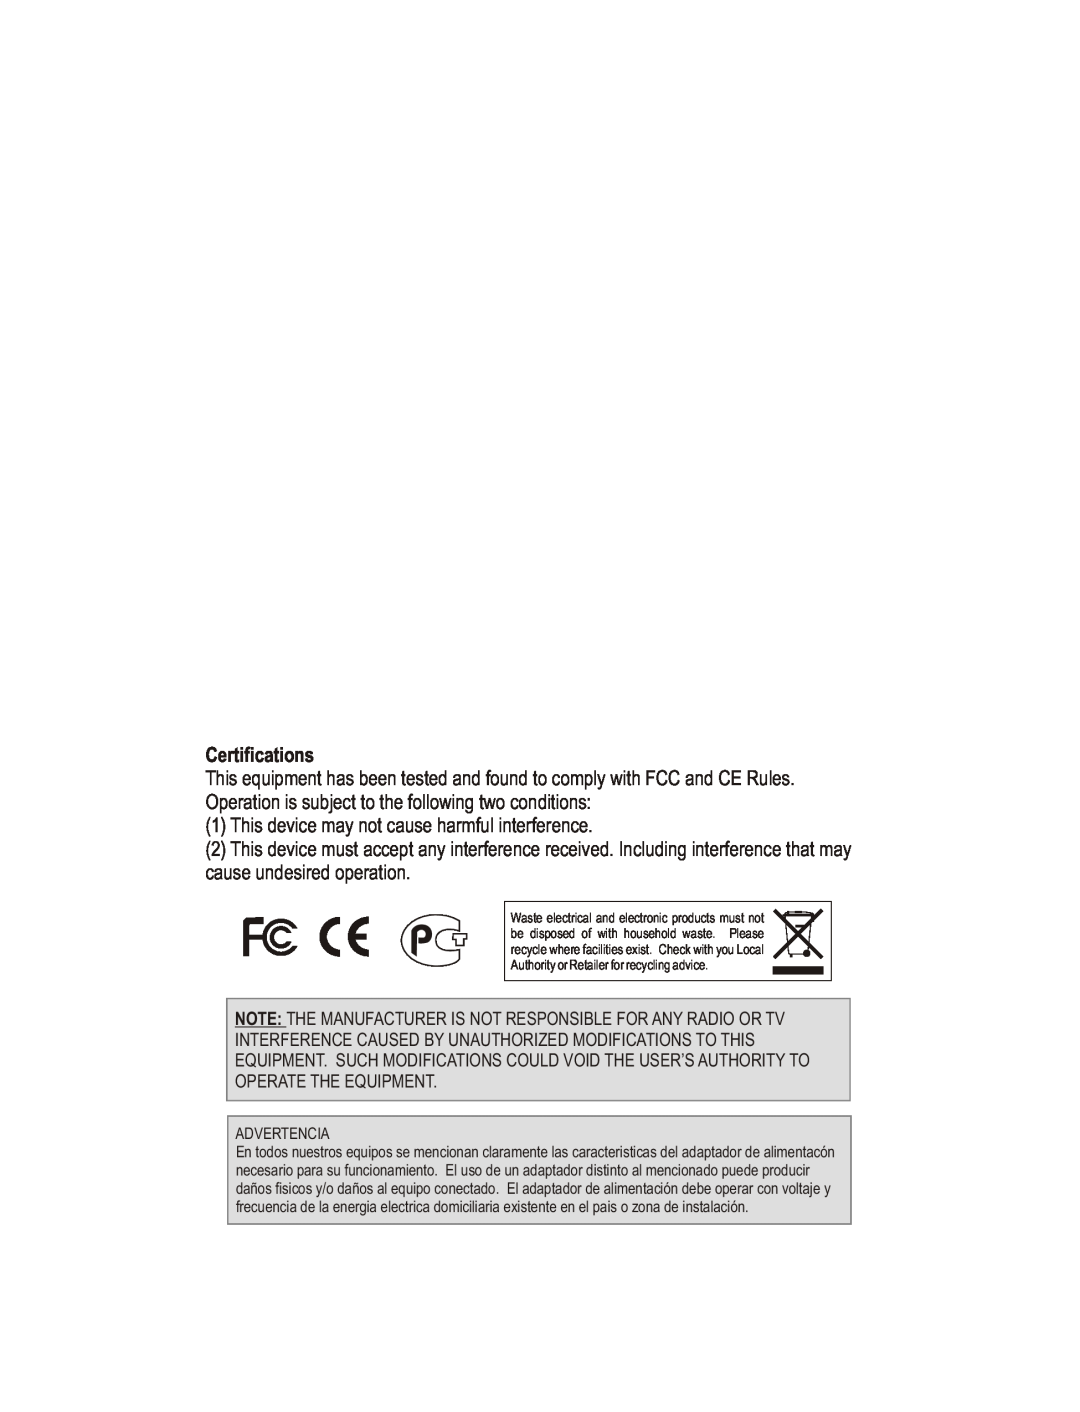 TRENDnet TEG-S8, TEG-S5 manual Certifications 